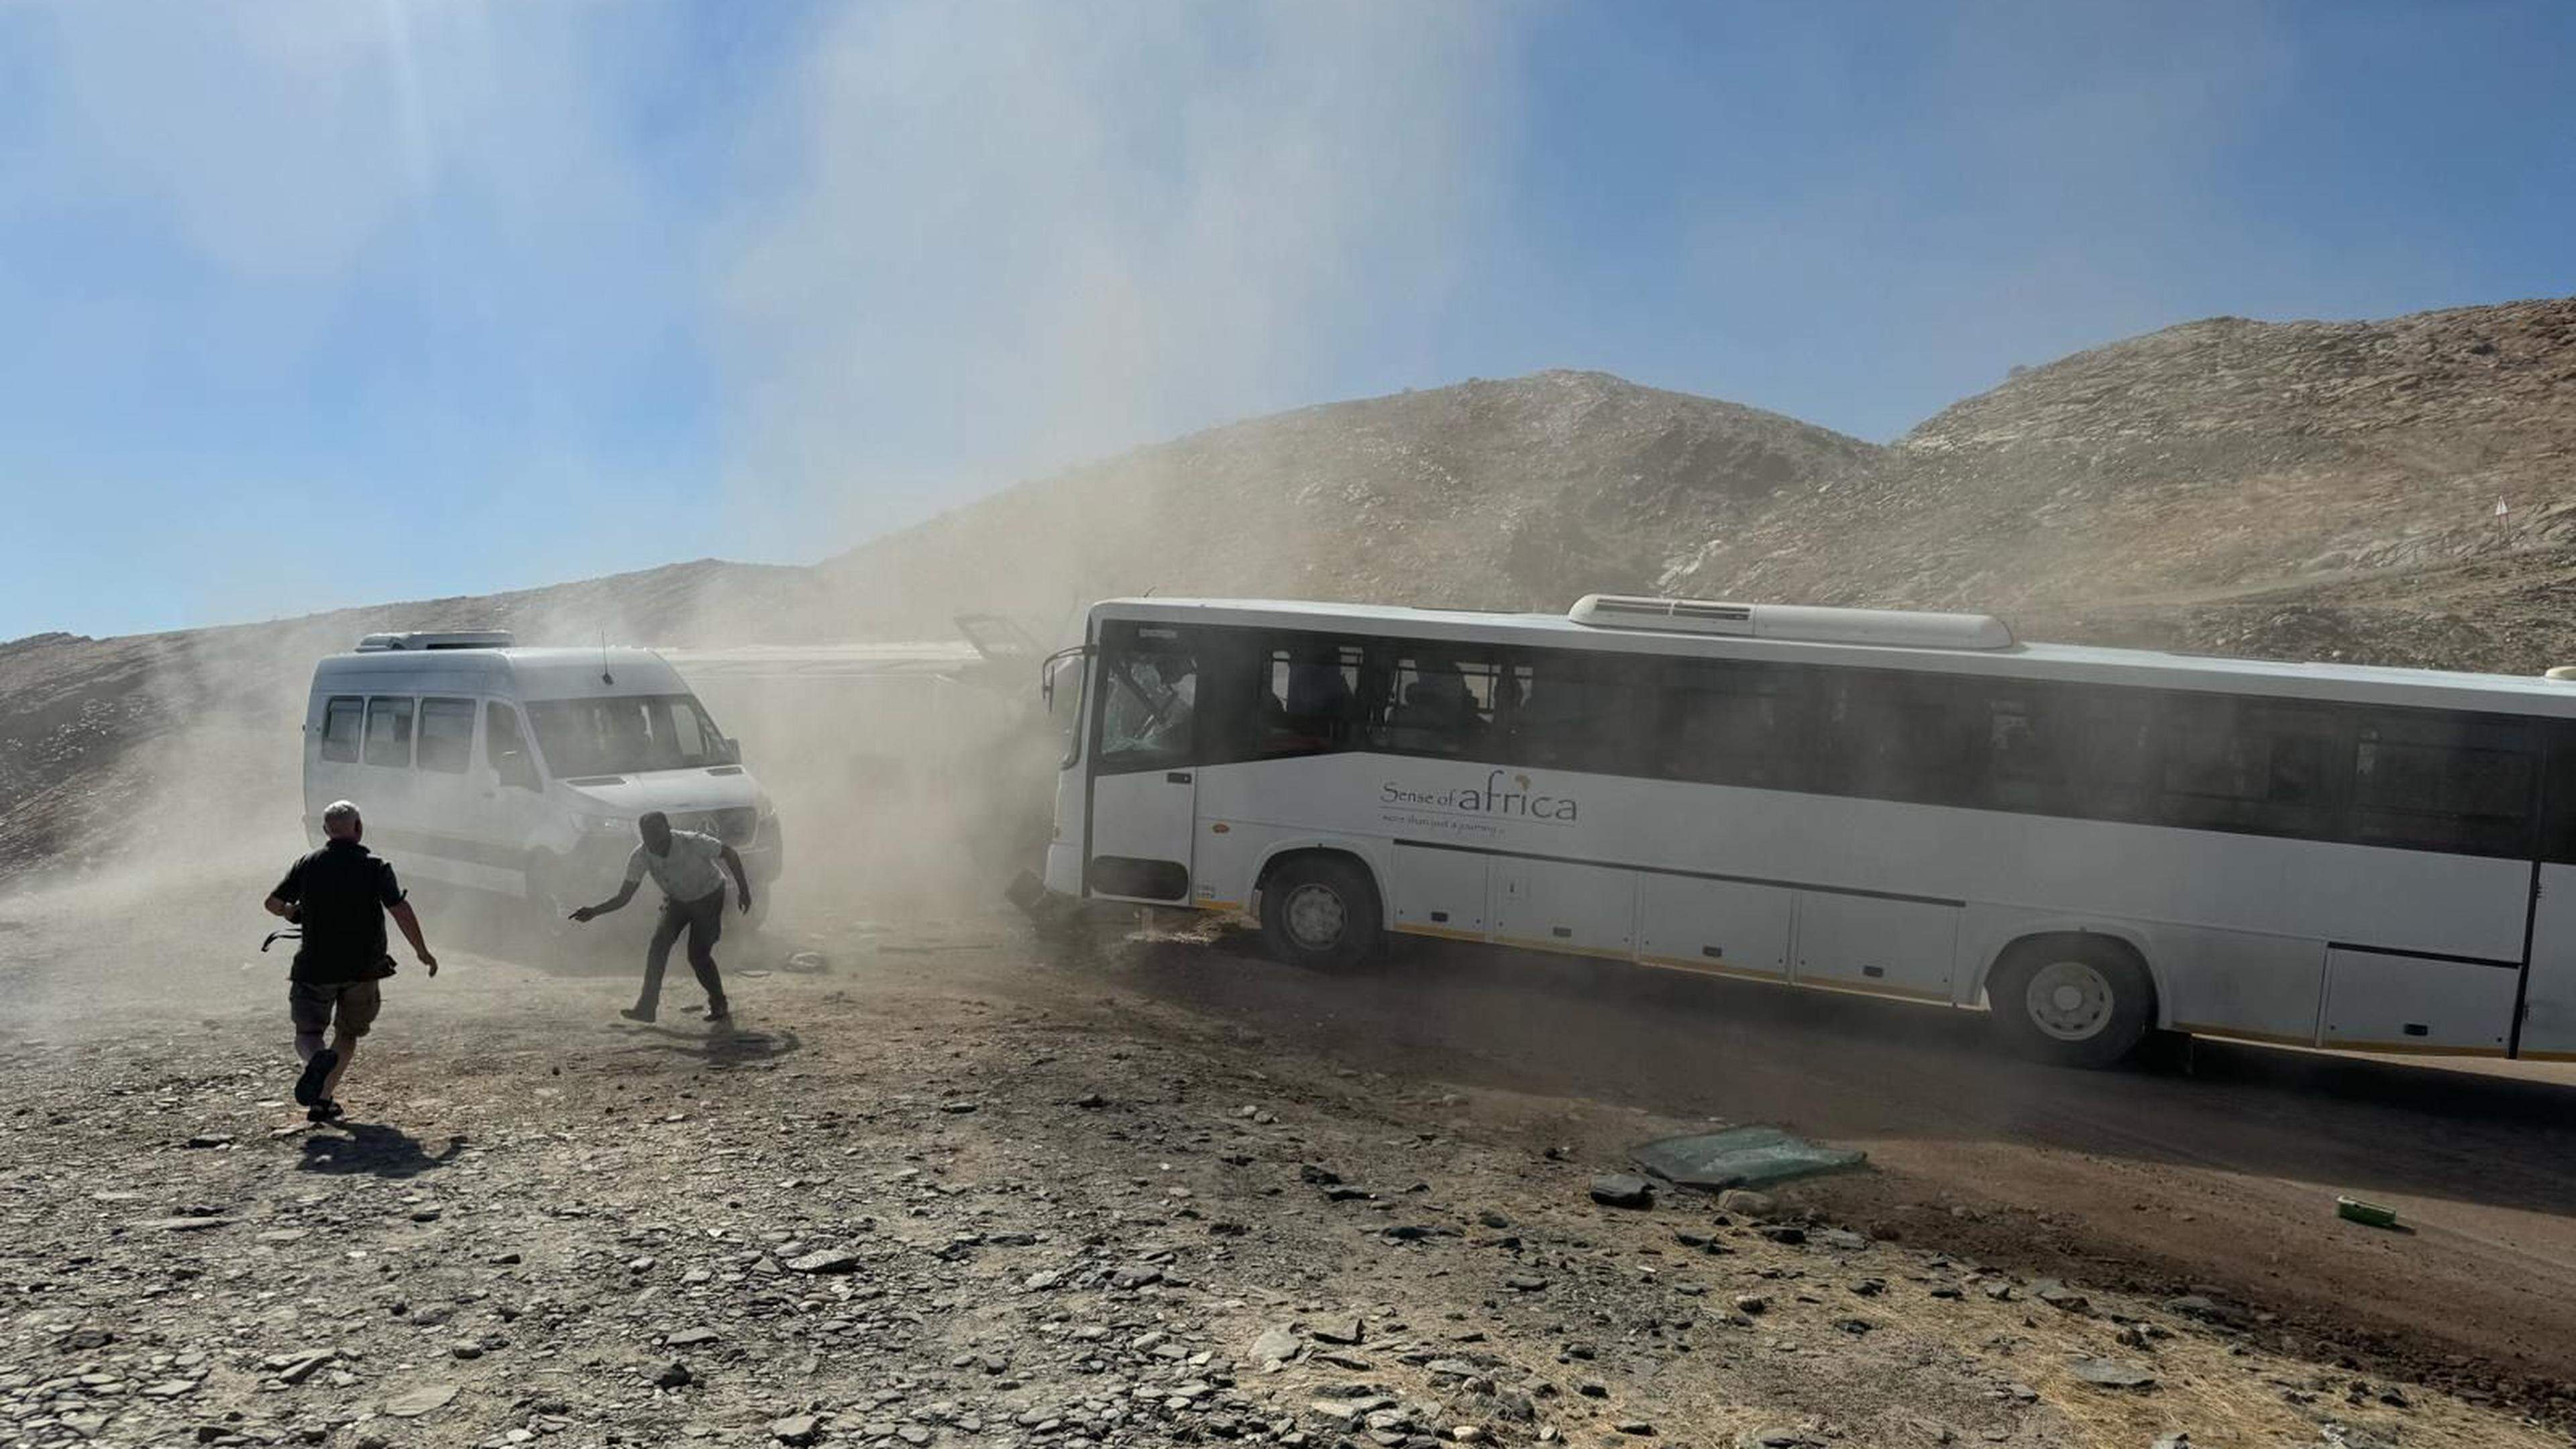 Imagem do acidente na Namíbia, que vitimou duas portuguesas. 